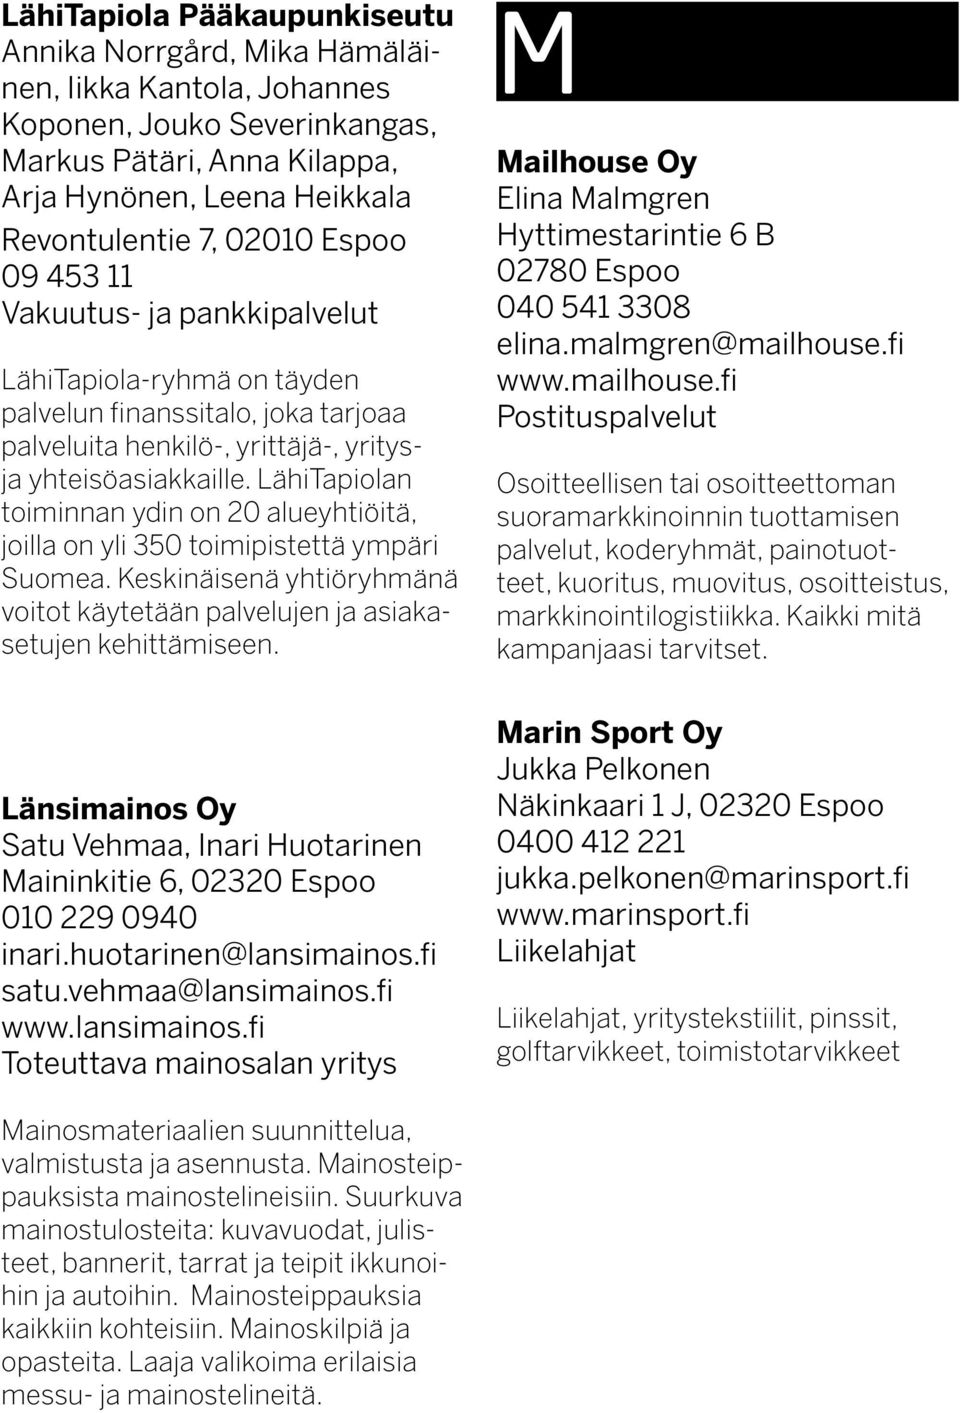 LähiTapiolan toiminnan ydin on 20 alueyhtiöitä, joilla on yli 350 toimipistettä ympäri Suomea. Keskinäisenä yhtiöryhmänä voitot käytetään palvelujen ja asiakasetujen kehittämiseen.